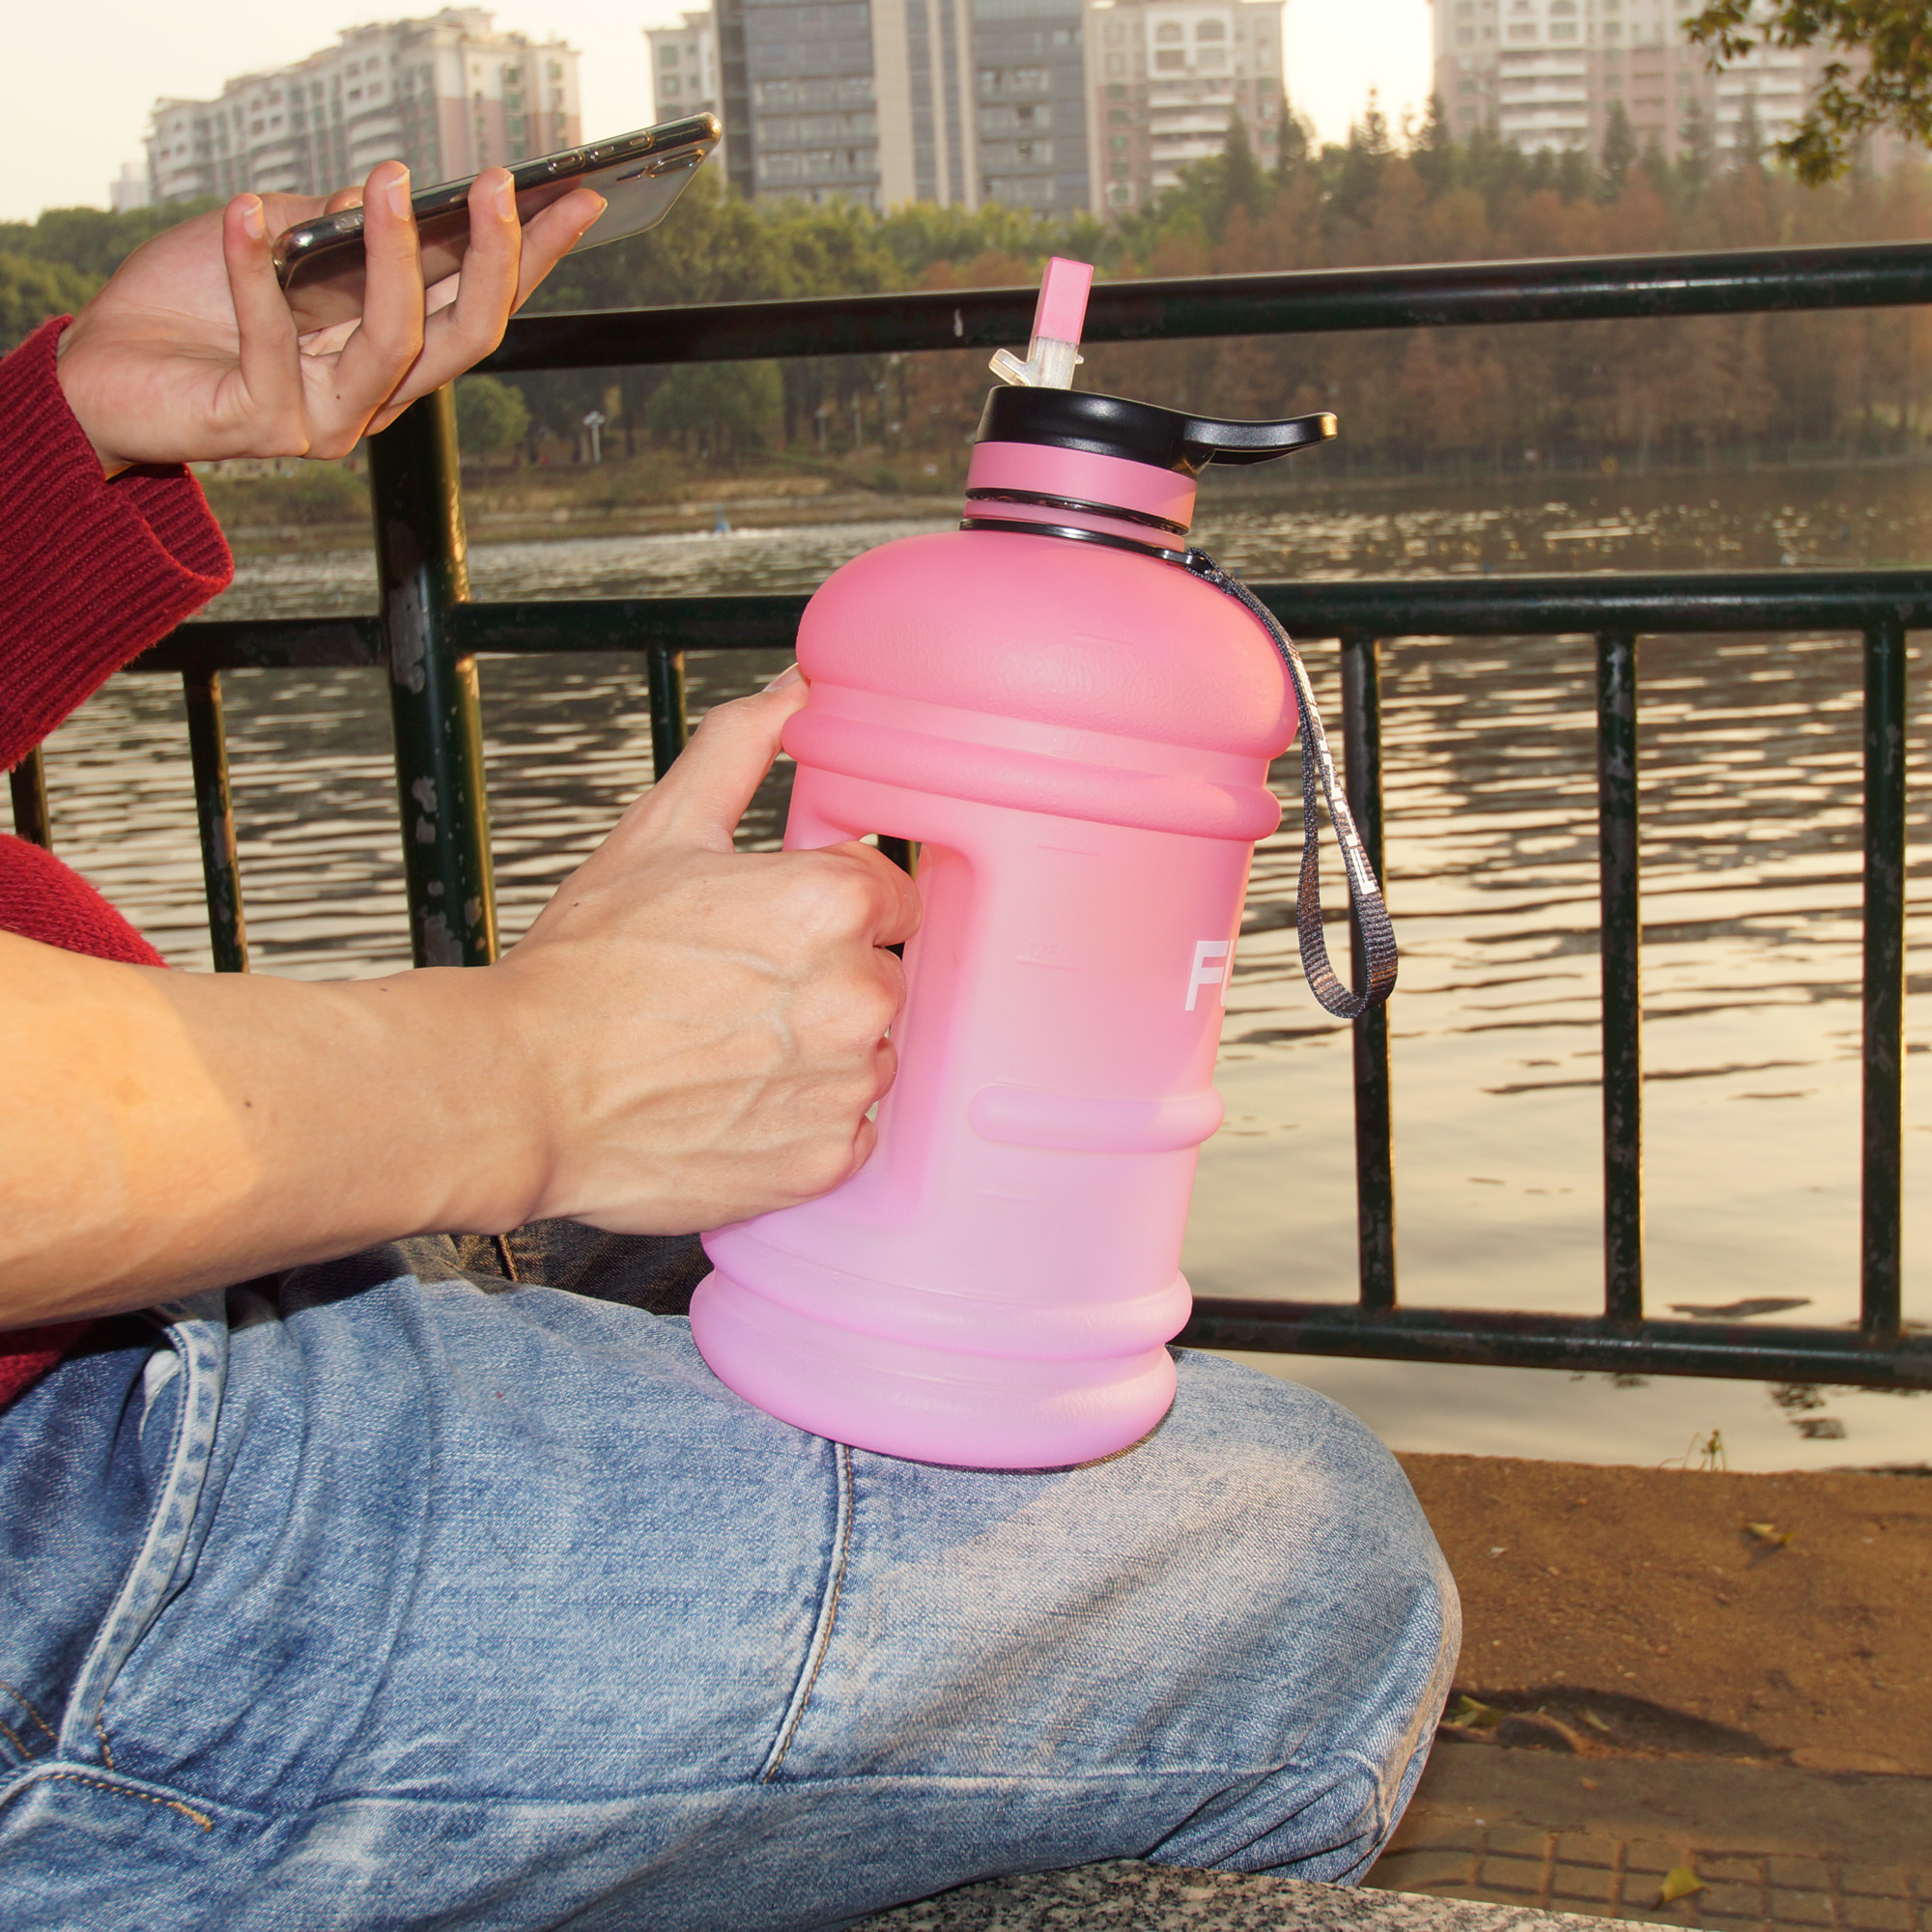 FUNUS Half Gallon Water Bottle Leakproof Big Water Jug with Storage Sl –  FUNUS WATER BOTTLE